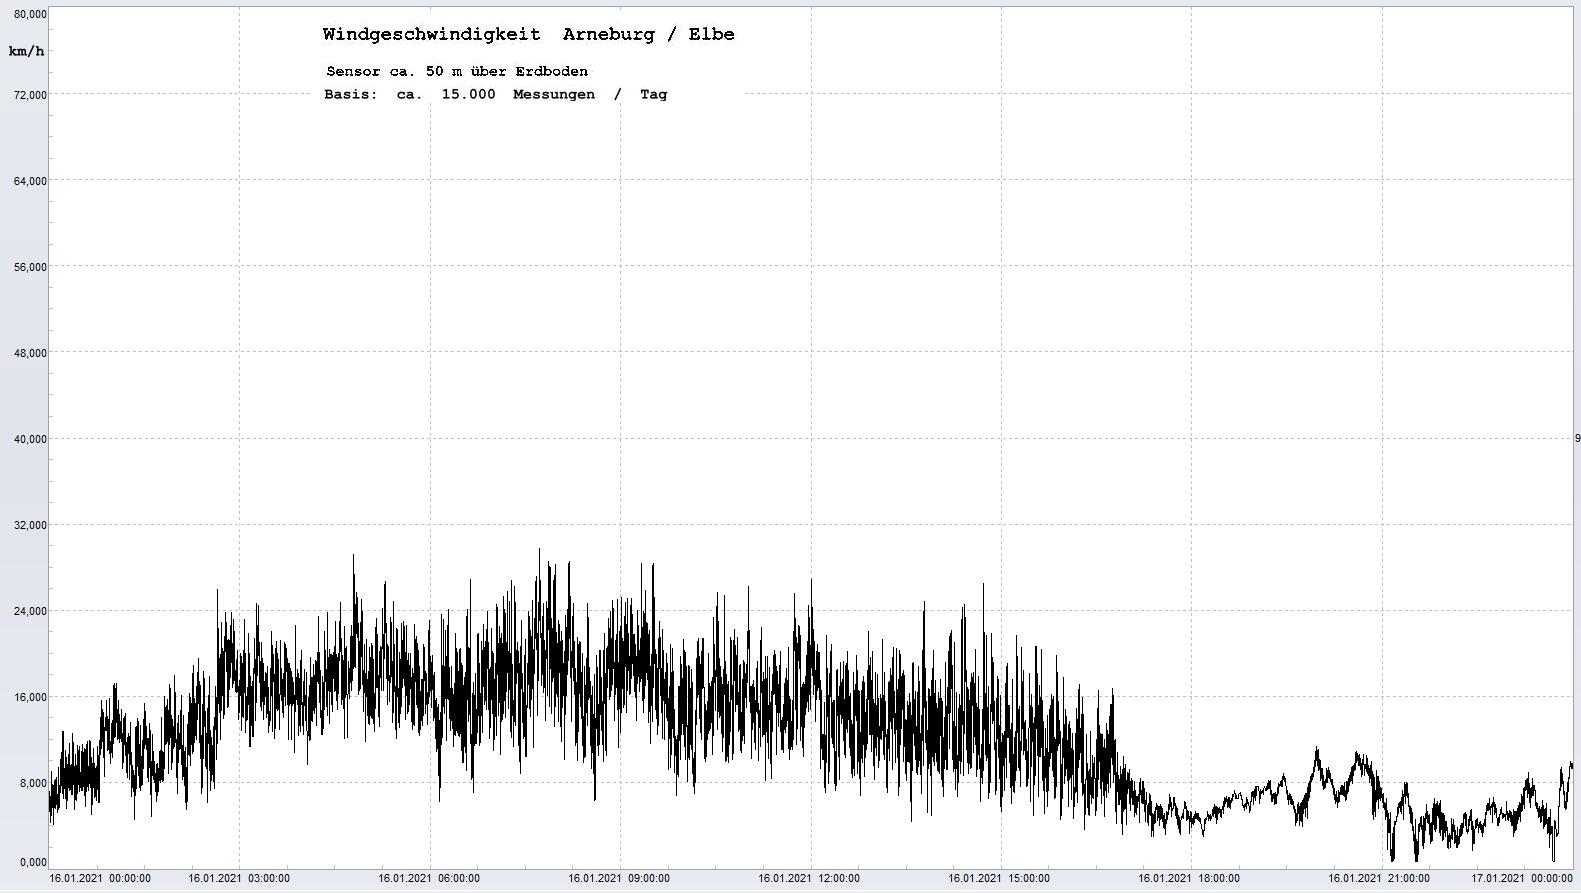 Arneburg Tages-Diagramm Winddaten, 16.01.2021
  Diagramm, Sensor auf Gebude, ca. 50 m ber Erdboden, Basis: 5s-Aufzeichnung